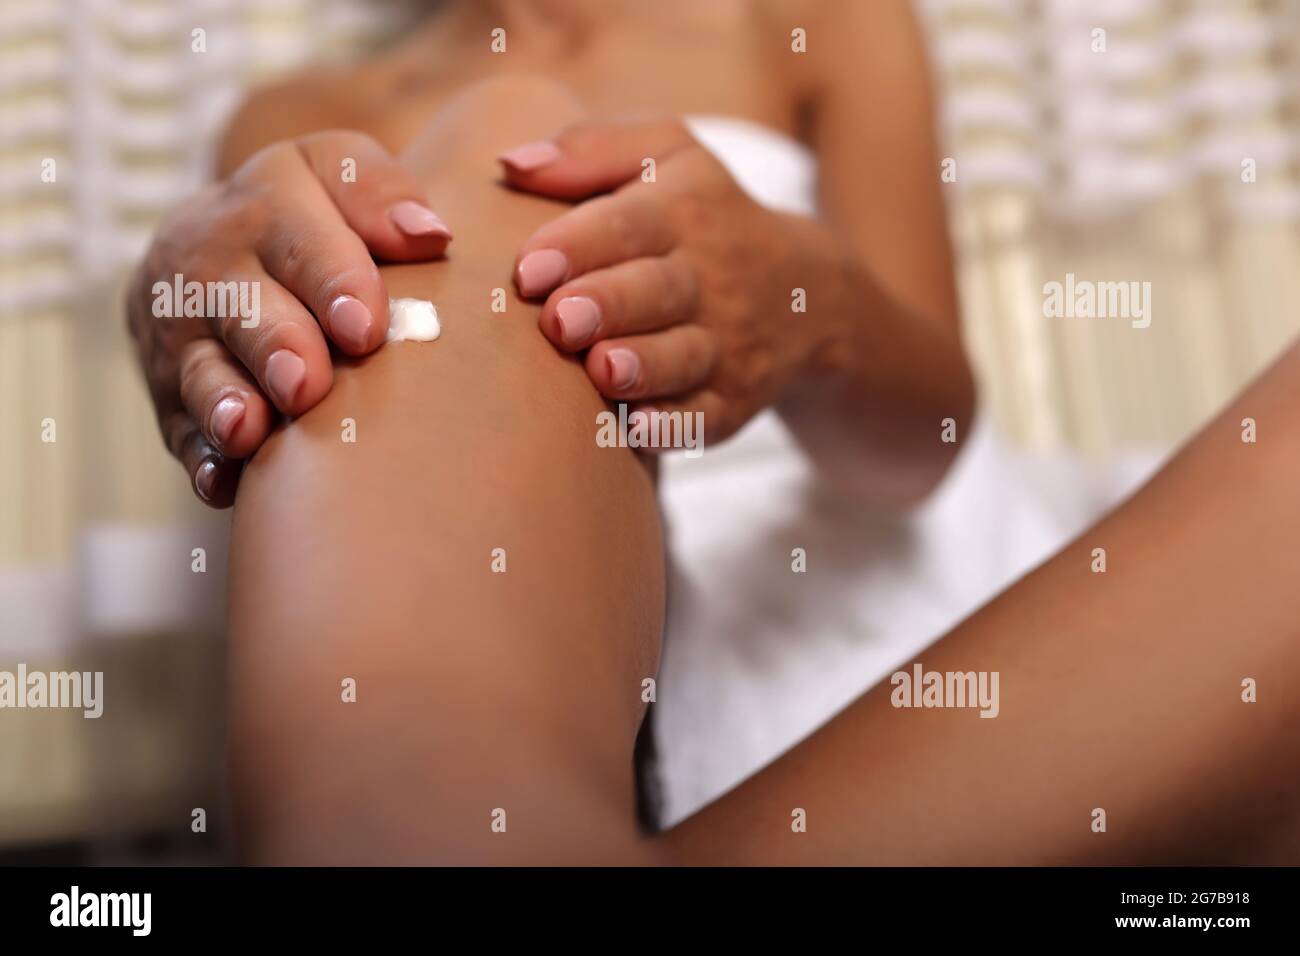 Frau Hände Anwendung Körpercreme auf ihr Bein zu Hause. Das Mädchen trägt ein weißes Handtuch. Konzept für Hautpflege und Schönheit Stockfoto